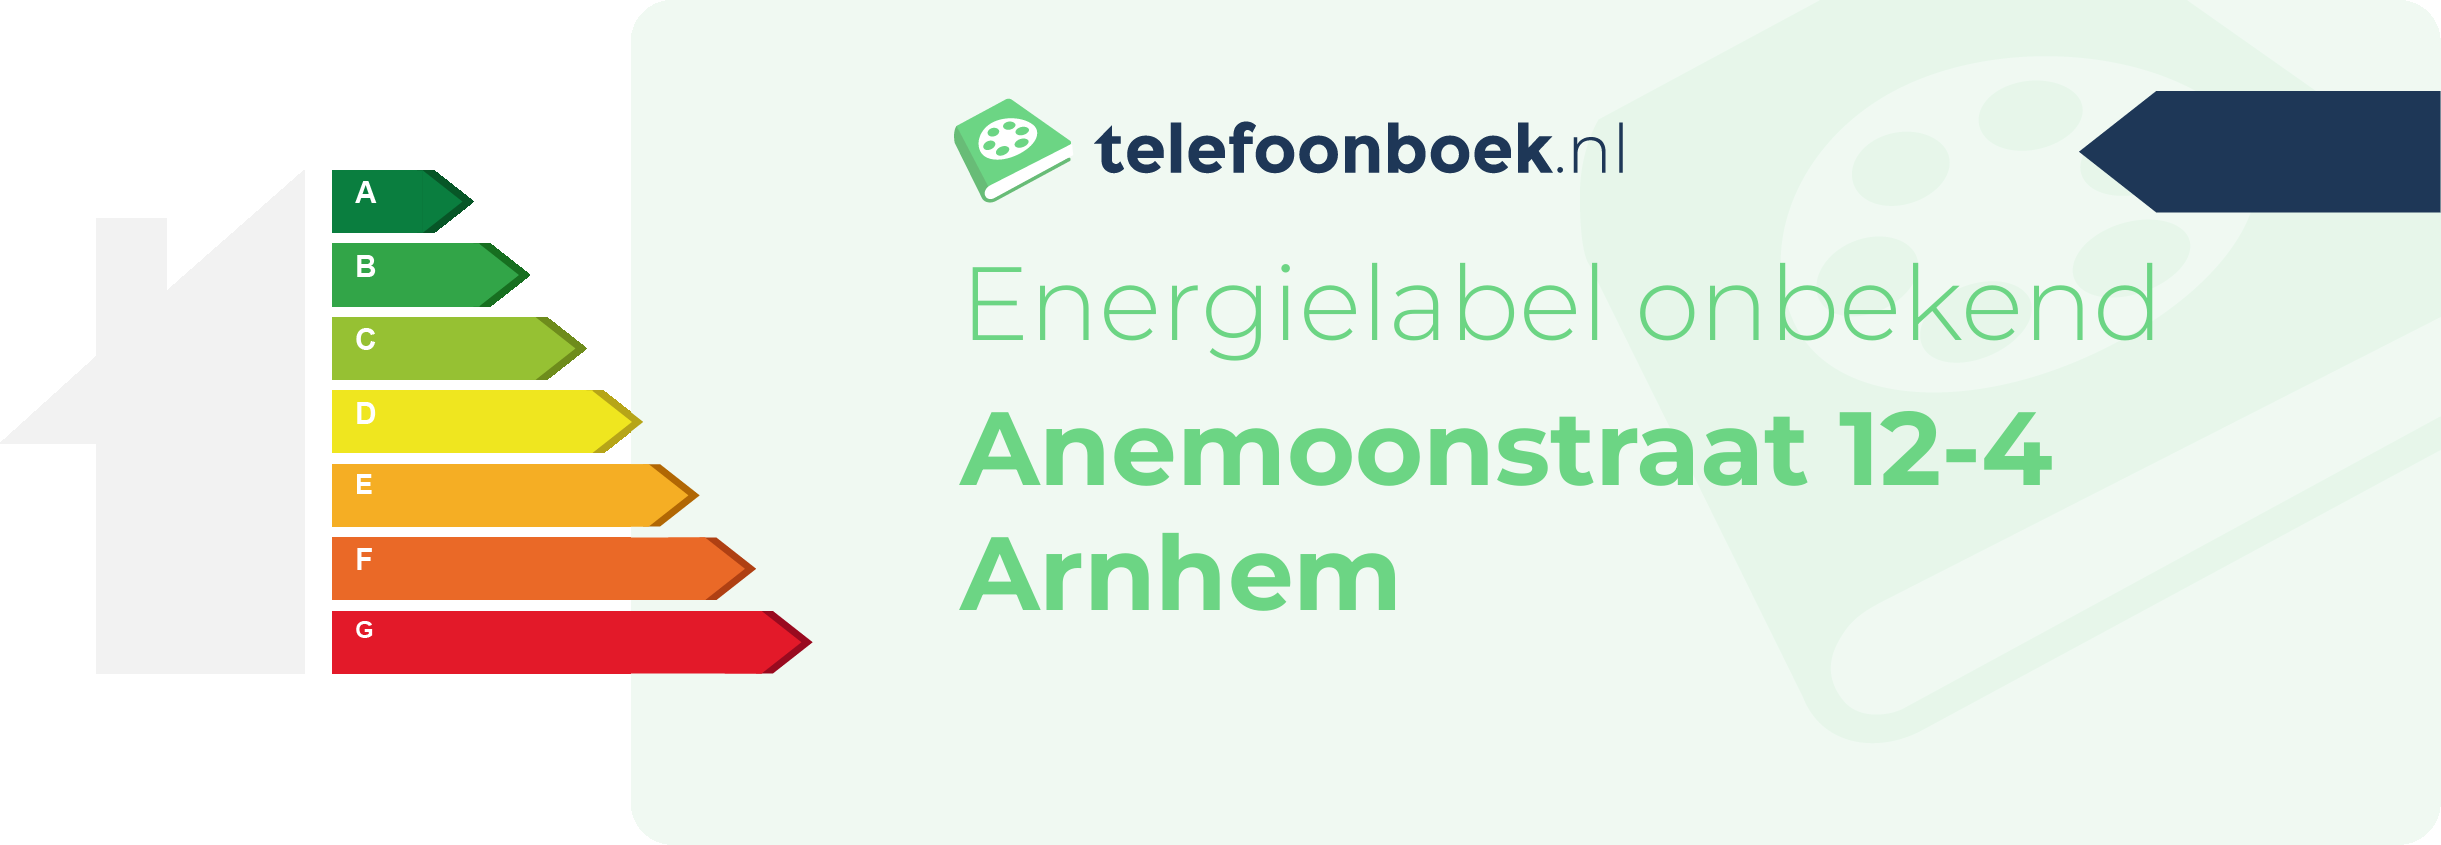 Energielabel Anemoonstraat 12-4 Arnhem